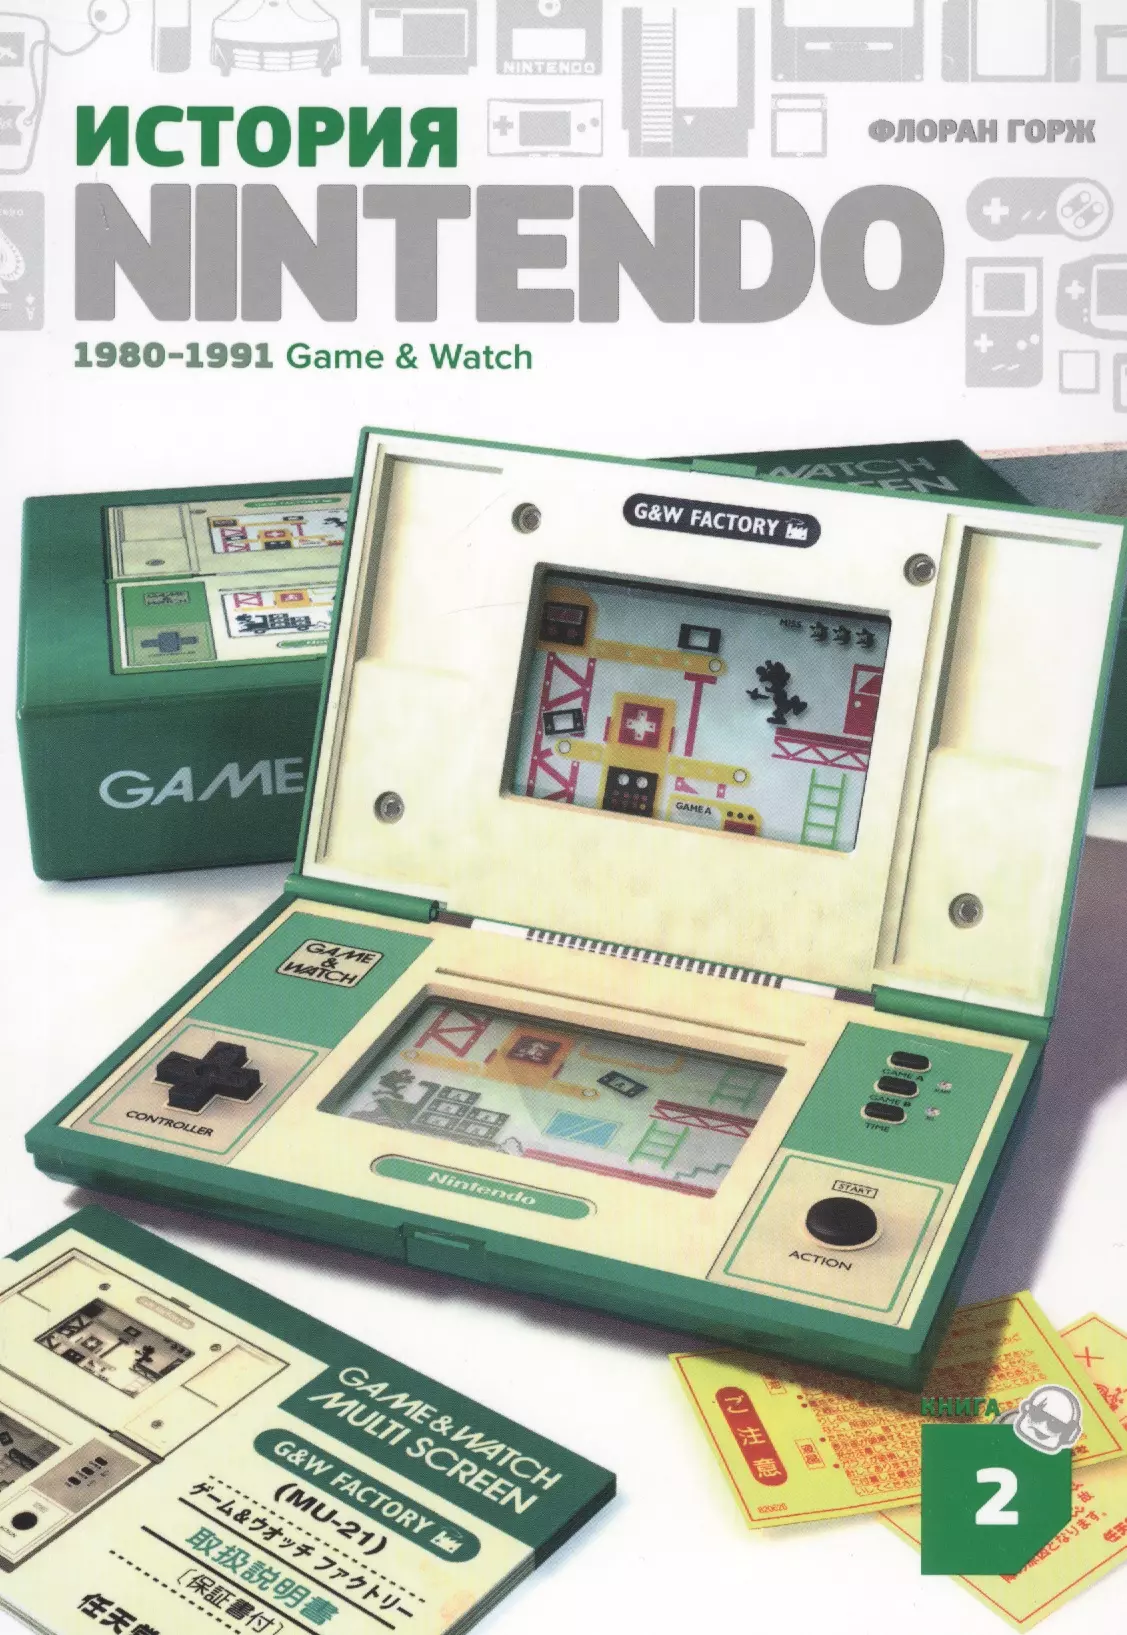 флоран горж история nintendo 1980 1991 game История Nintendo. 1980-1991. Книга 2. Game&Watch